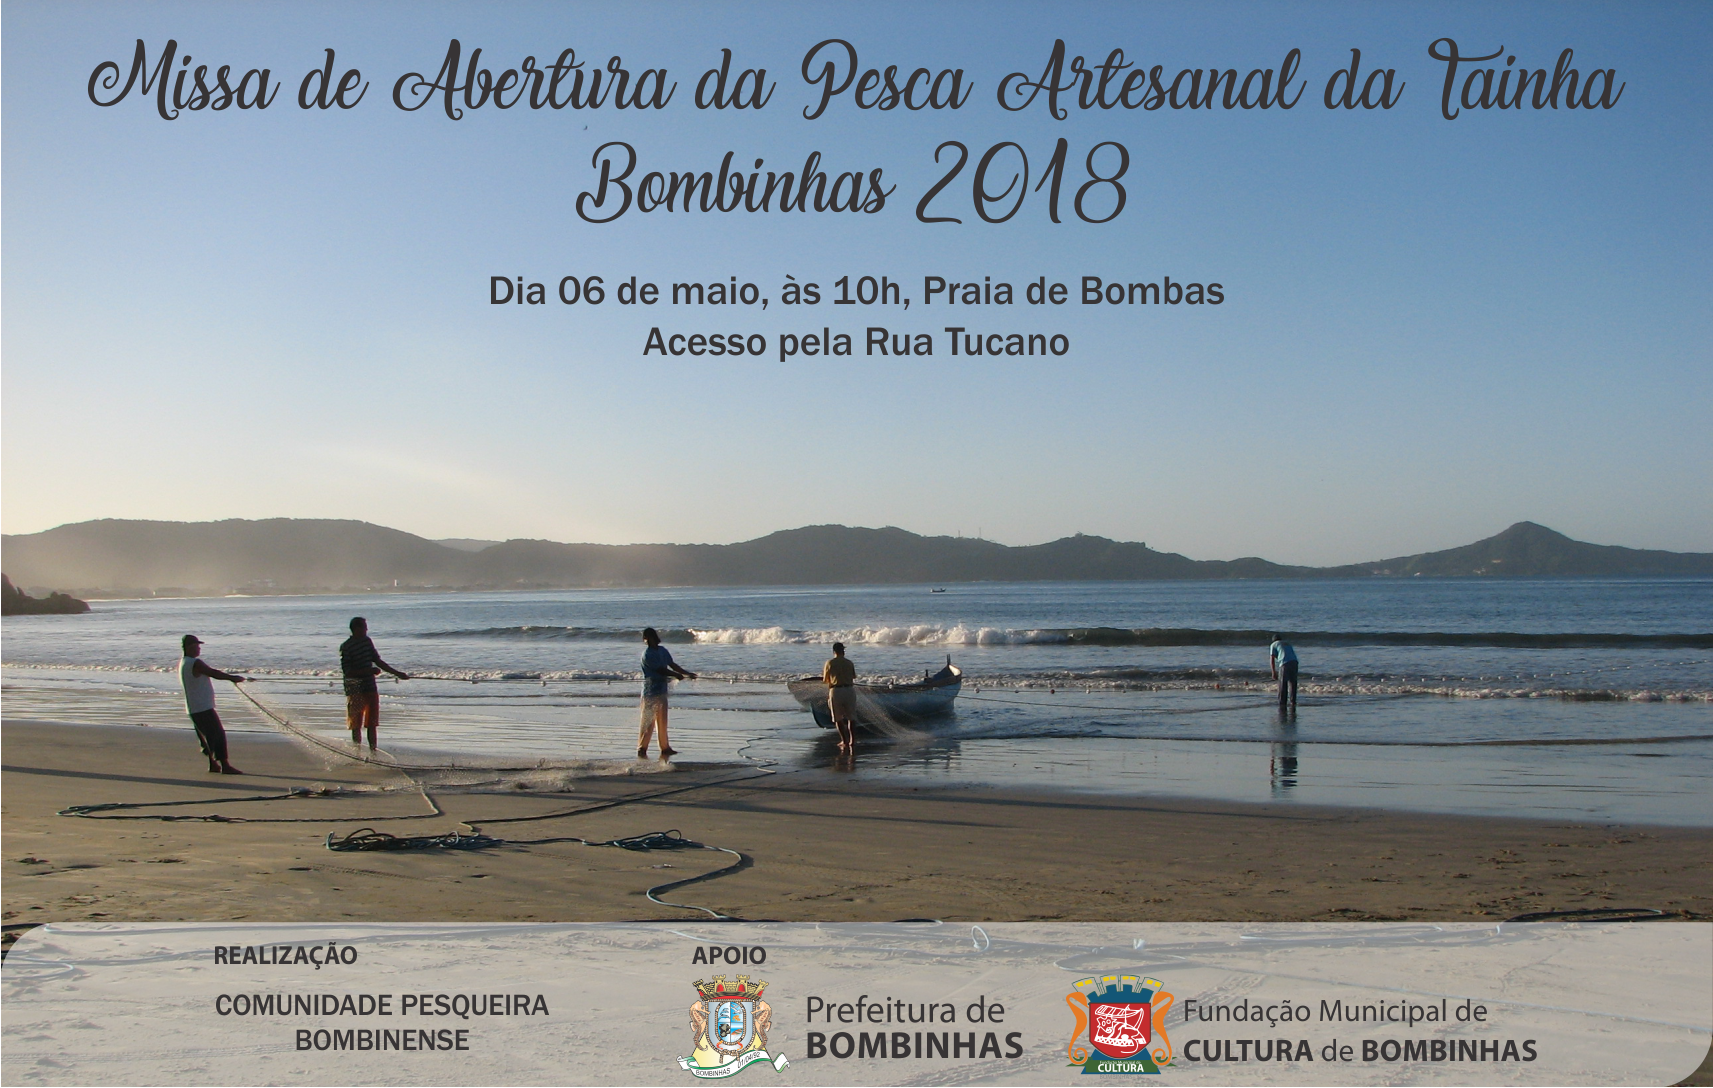 Missa de Abertura da Pesca da Tainha chega a sua 10ª edição em Bombinhas, com grande comemoração na Praia de Bombas.